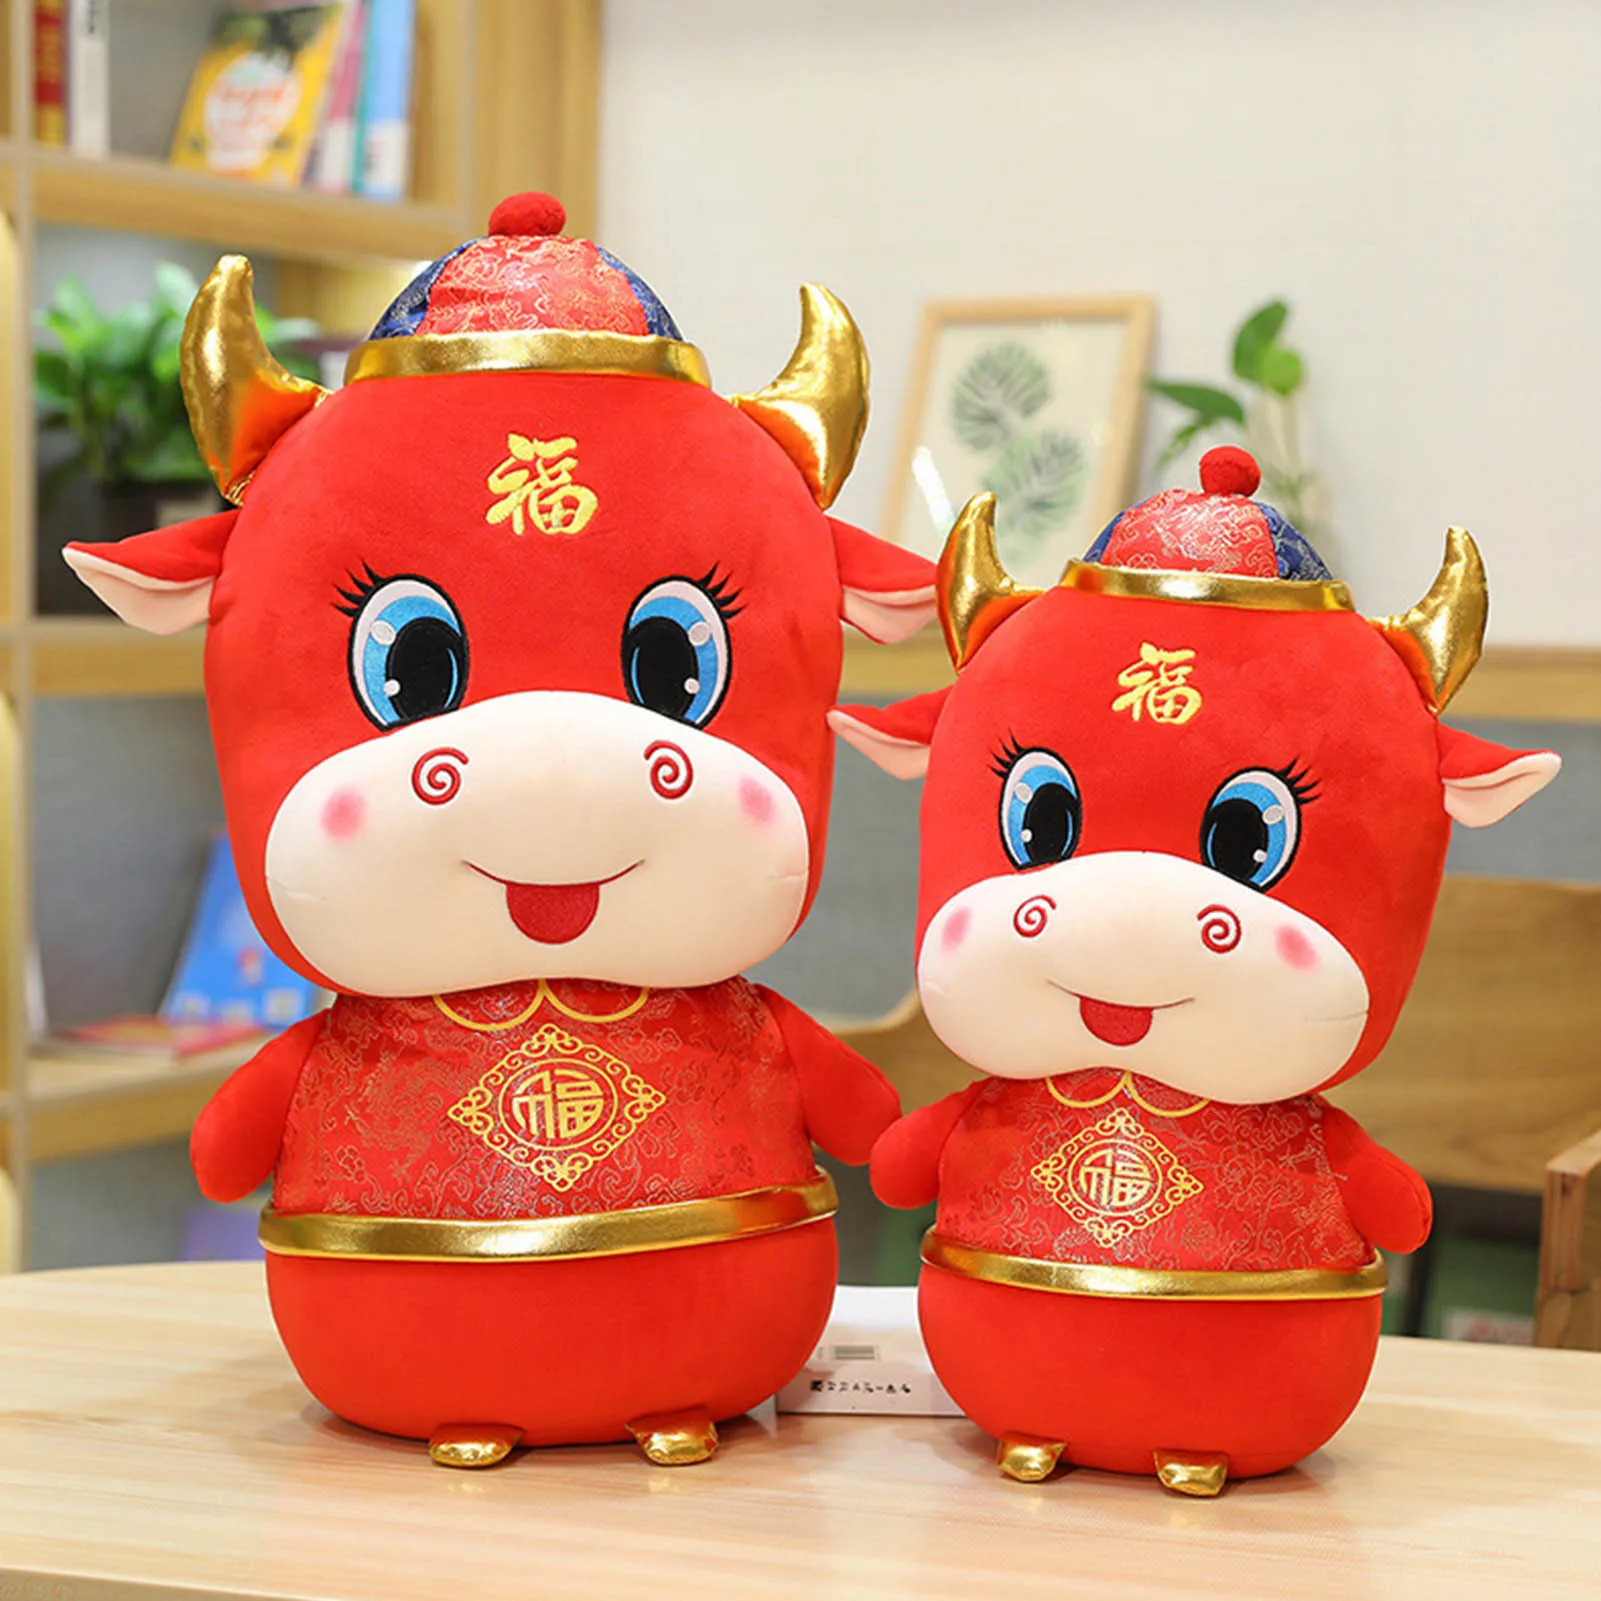 

2021 китайская Новогодняя плюшевая кукла бык, игрушка, милая талисман в виде красного знака зодиака, корова, мягкая кукла для детей, подарок на...